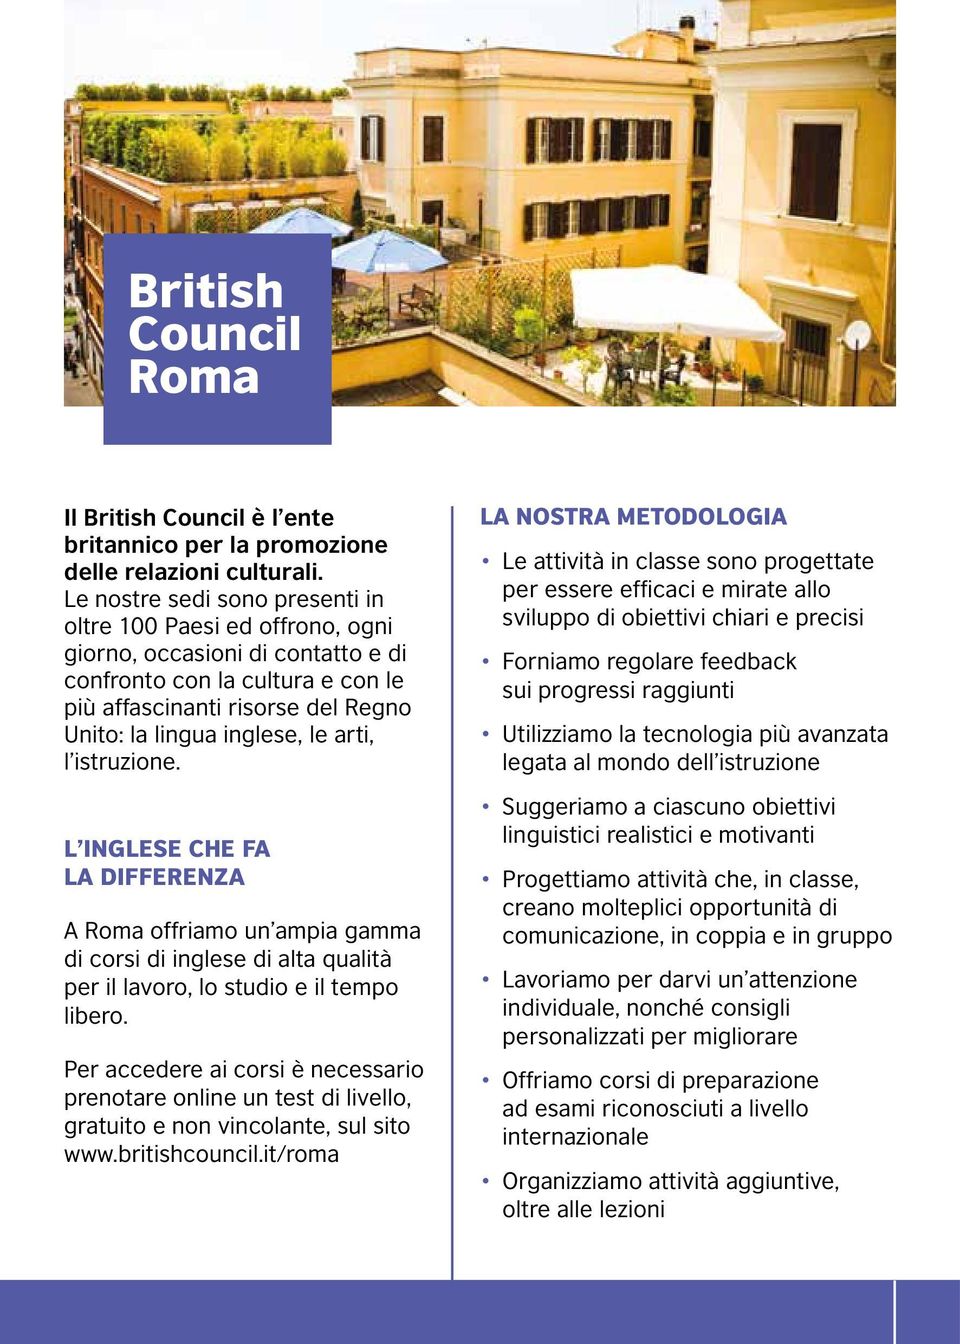 arti, l istruzione. L INGLESE CHE FA LA DIFFERENZA A Roma offriamo un ampia gamma di corsi di inglese di alta qualità per il lavoro, lo studio e il tempo libero.